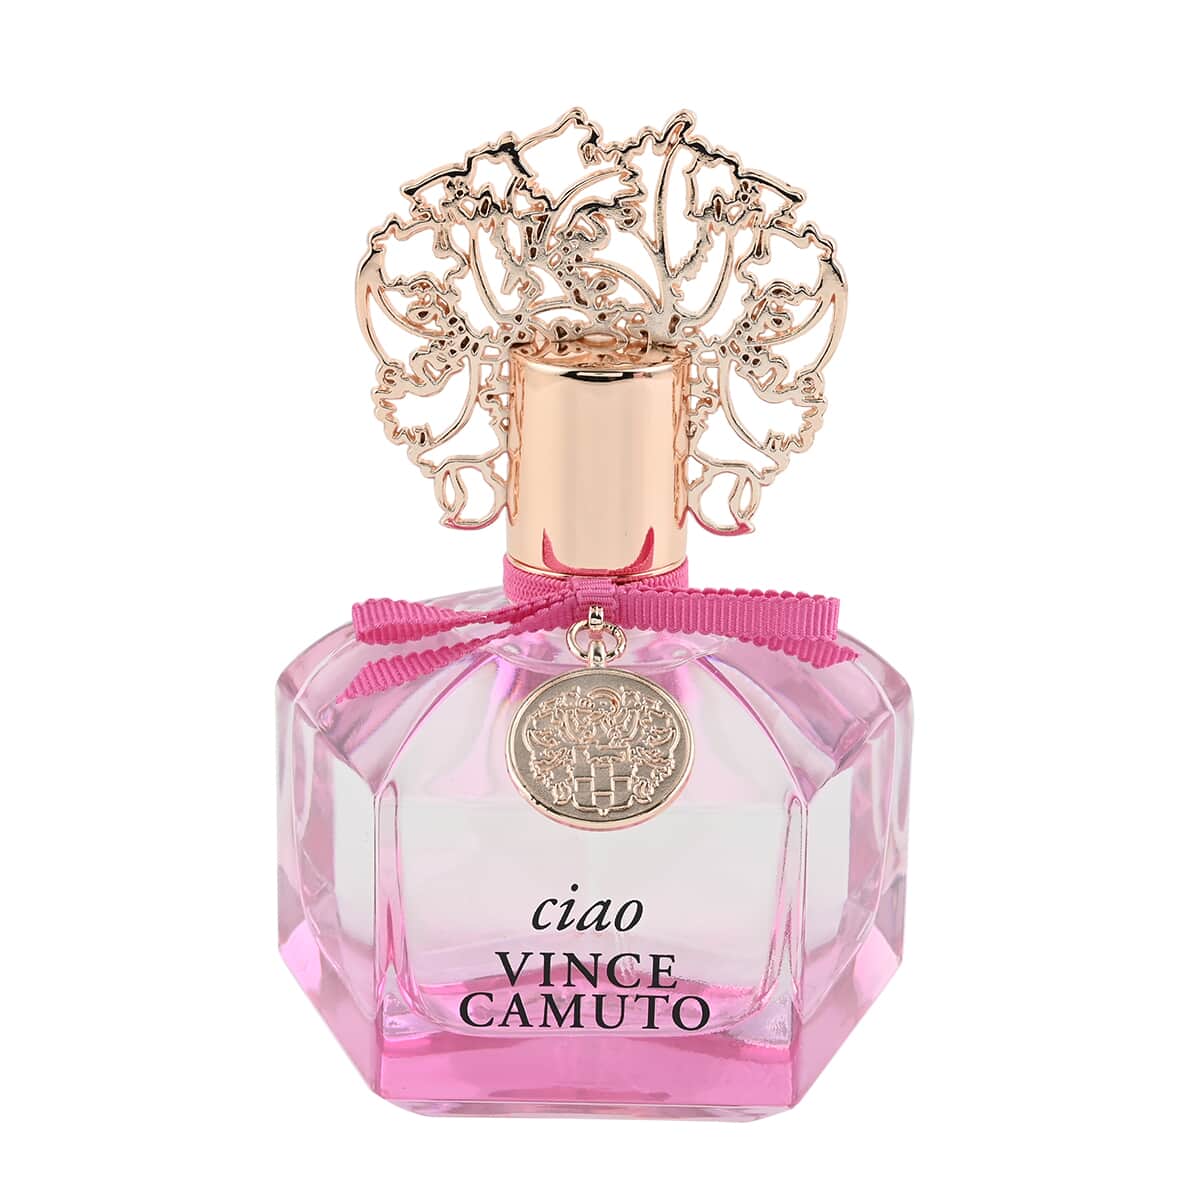 Vince Camuto Ciao Eau de Parfum for Women 3.4 oz